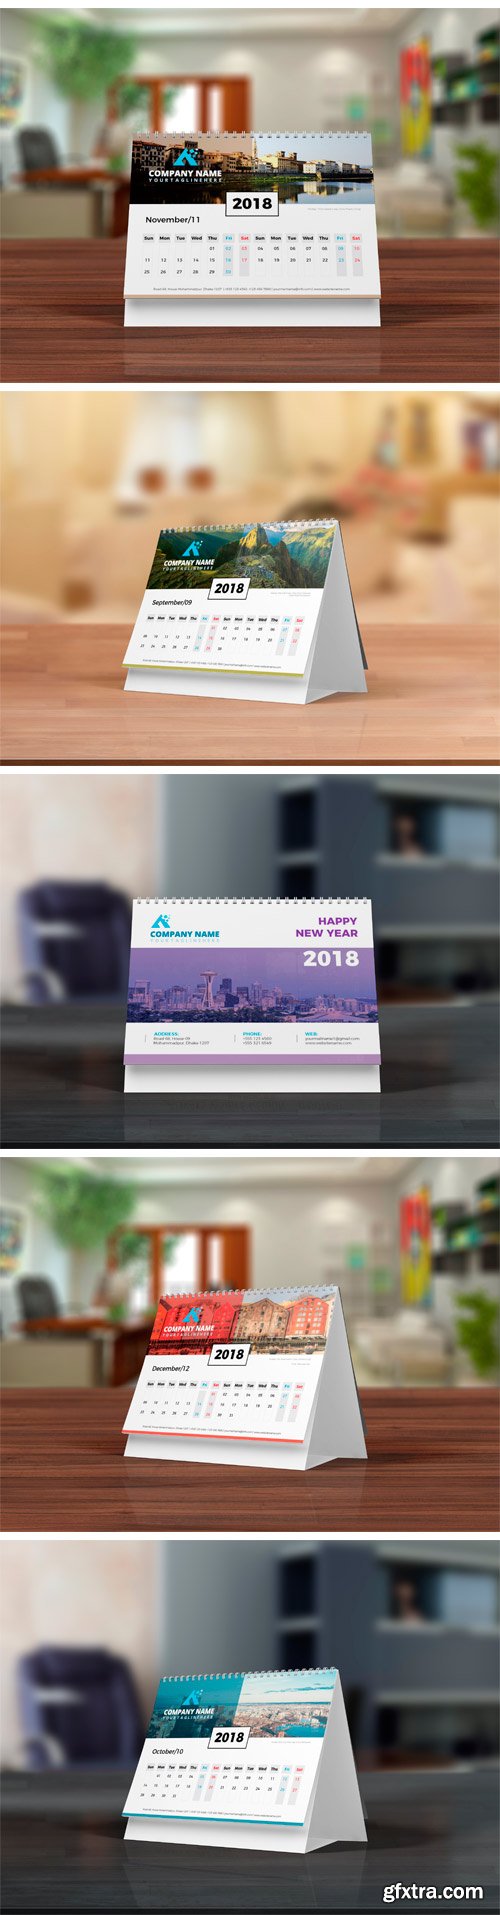 CM - Desk Calendar 2018 1911121